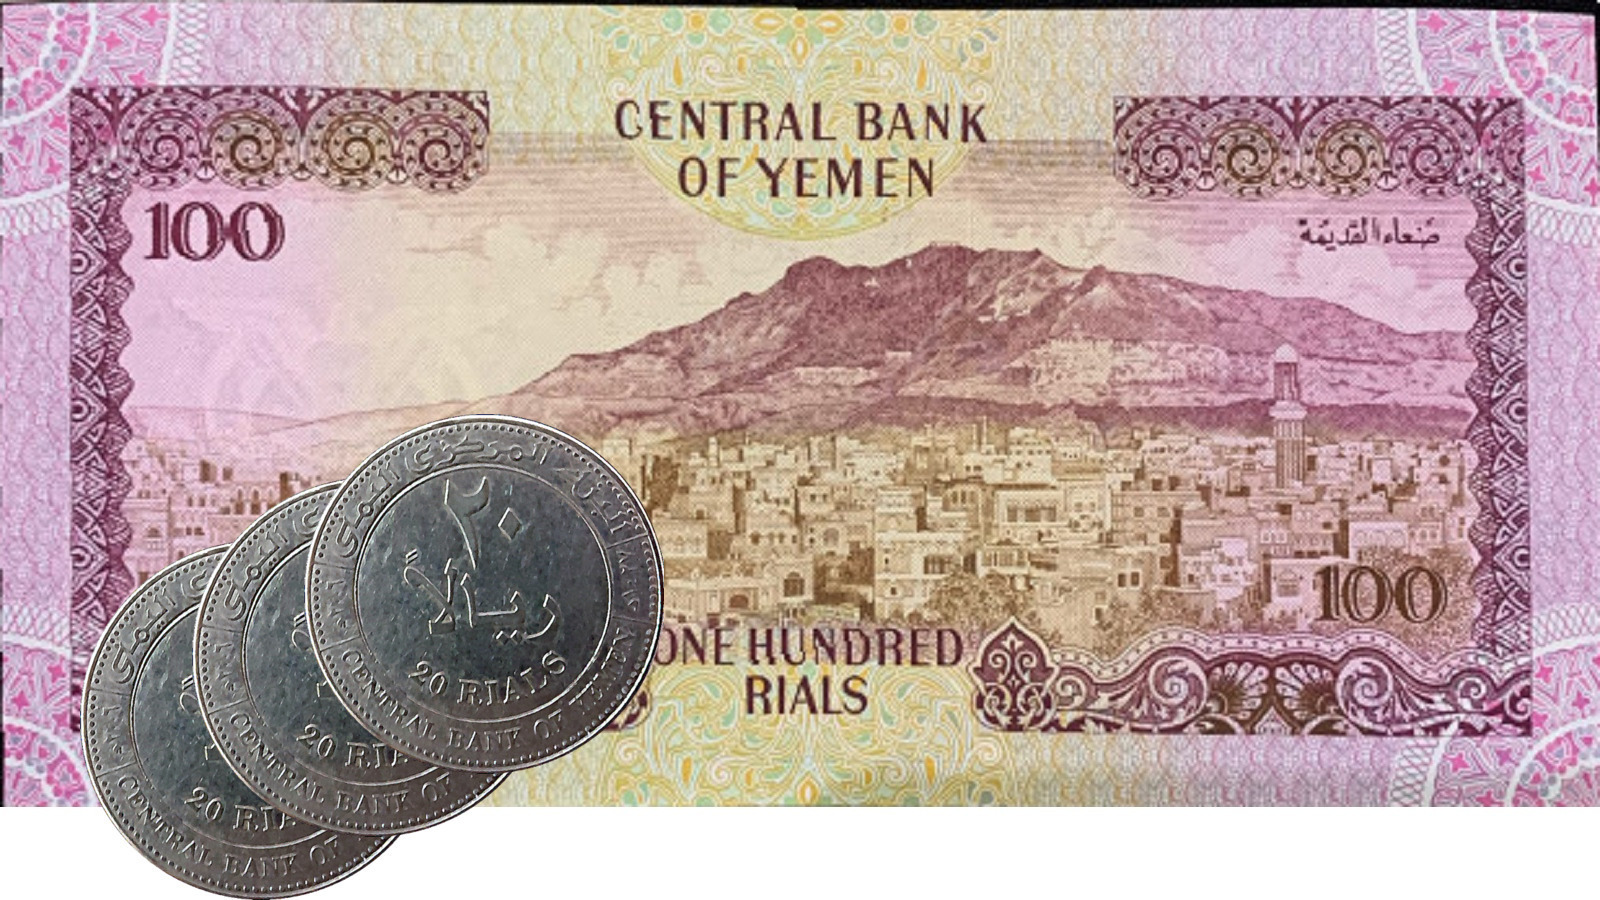 آخر تحديث لأسعار صرف العملات في صنعاء وعدن اليوم.. استقرار عند هذا السعر